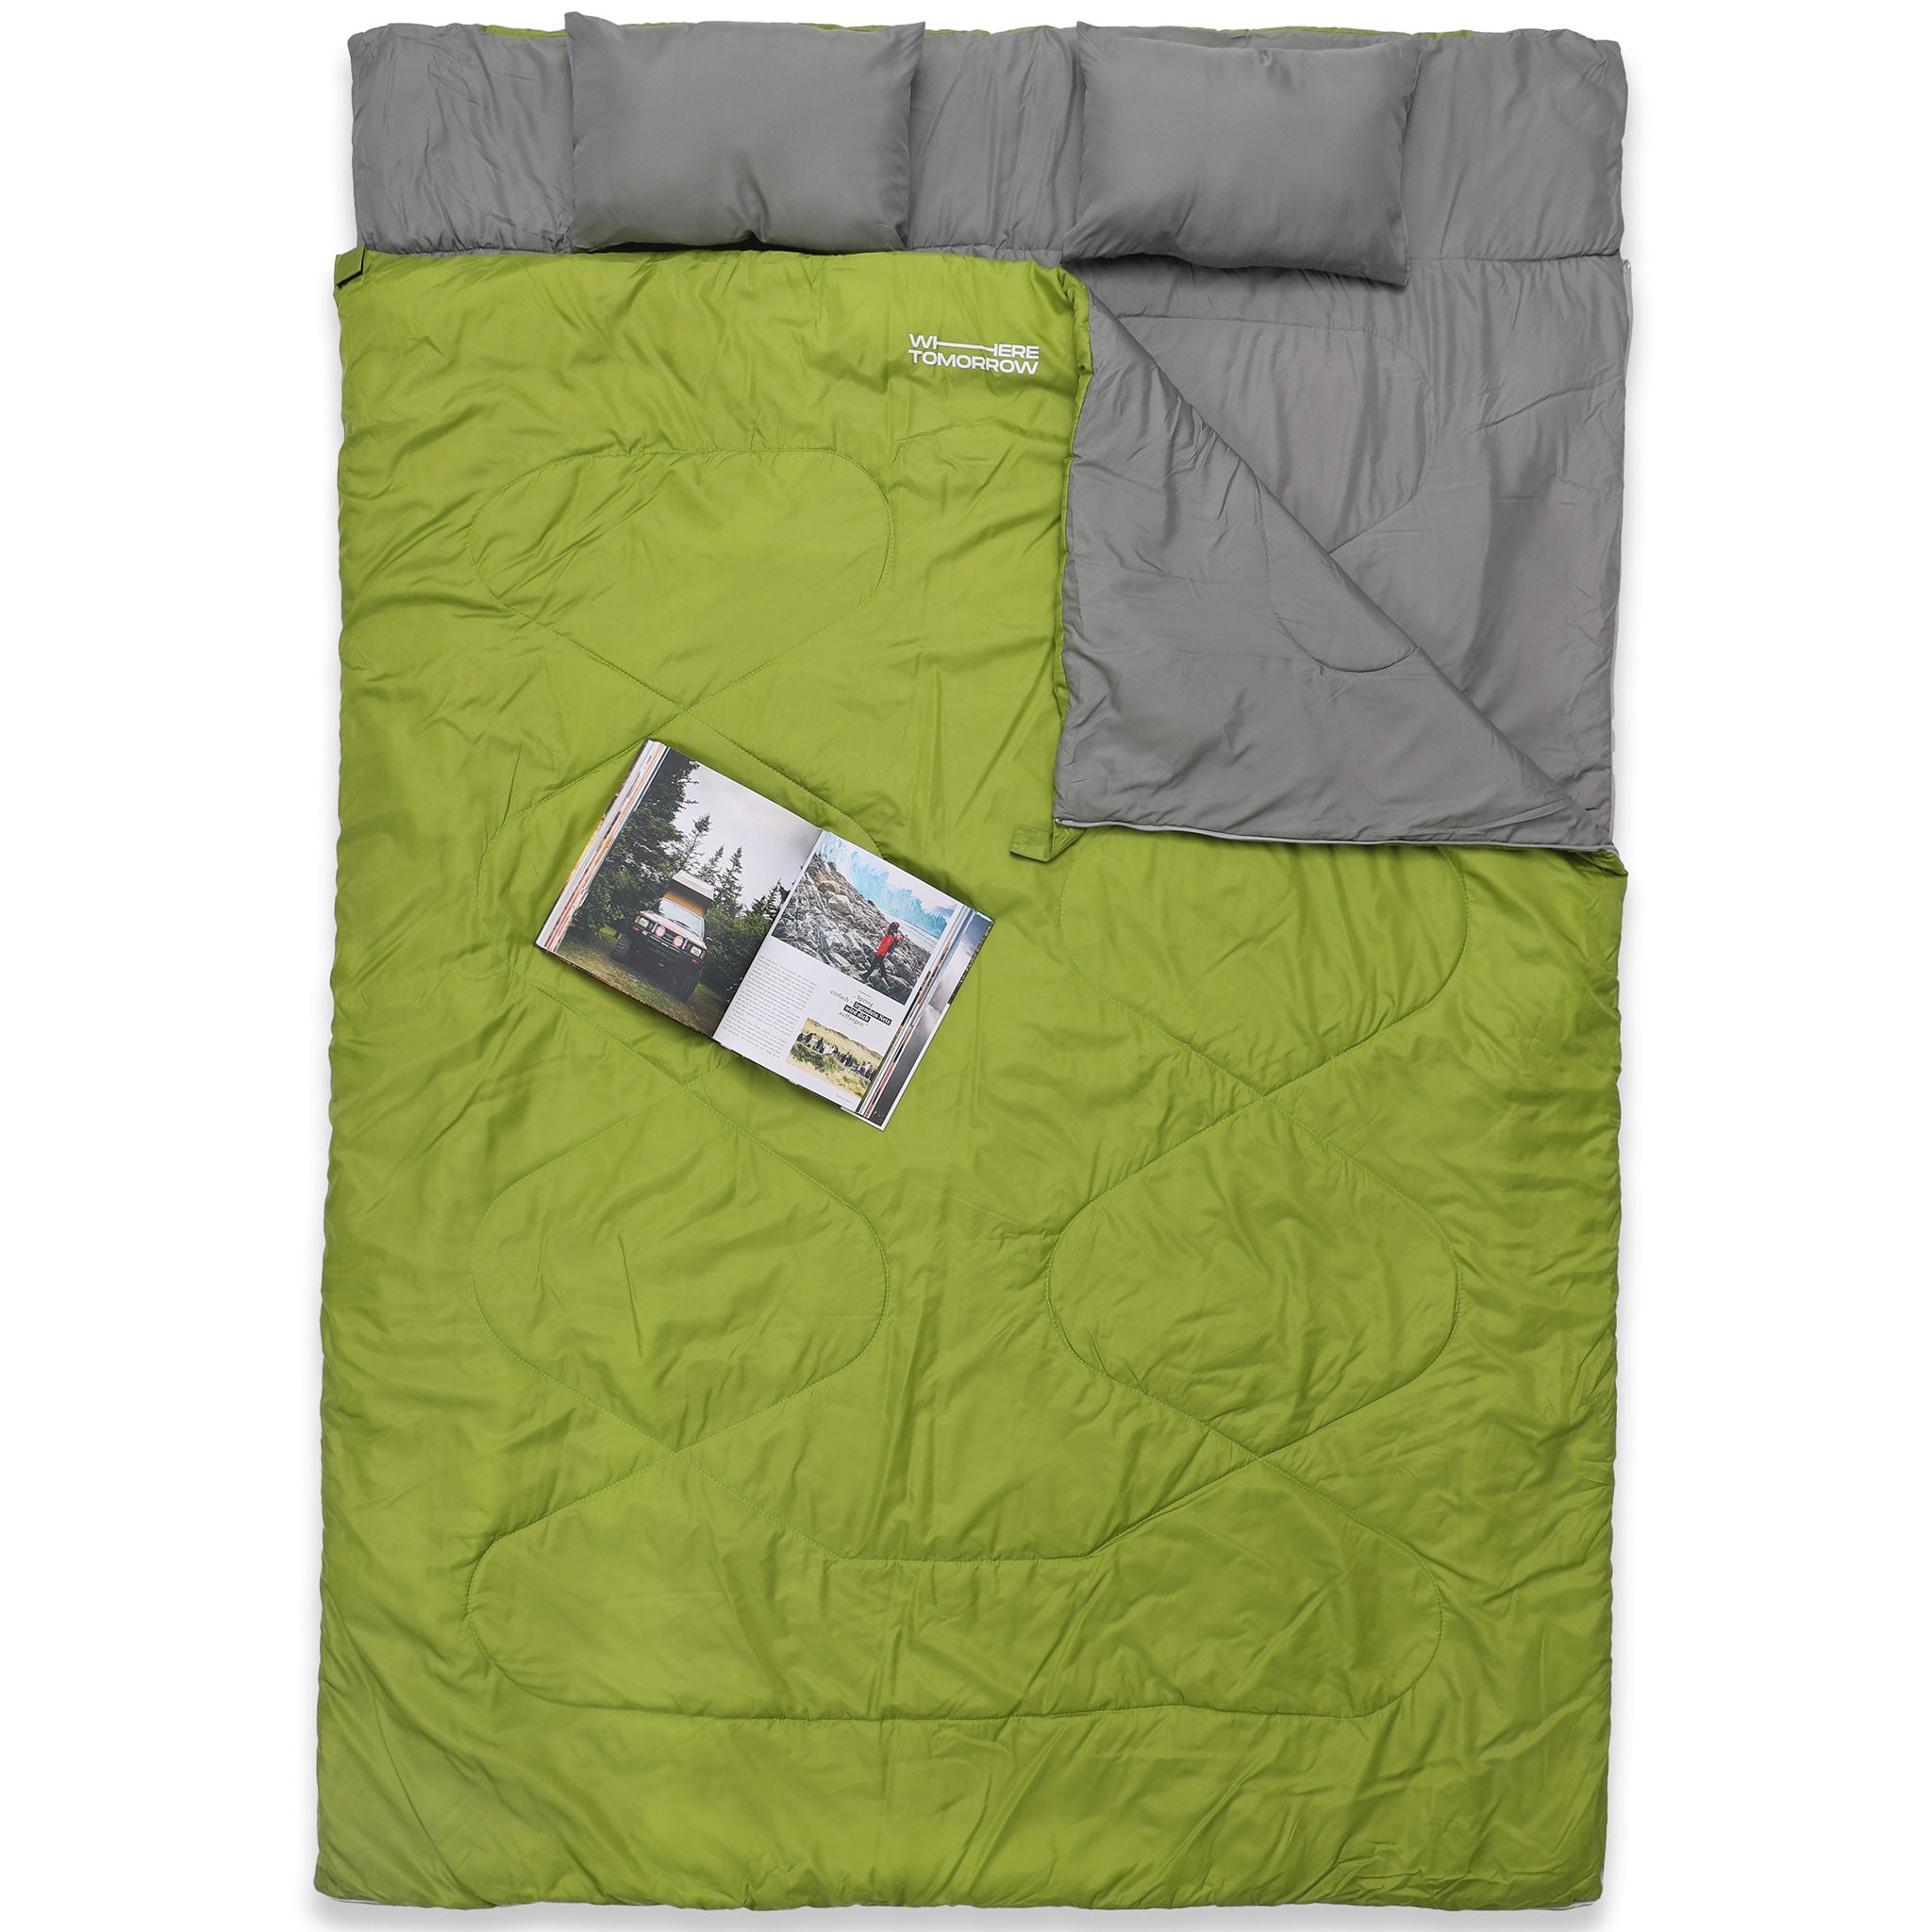 Doppelschlafsack mit Tragetasche - 2-Personen Schlafsack - 190 x 150 cm - Dunkelgrün